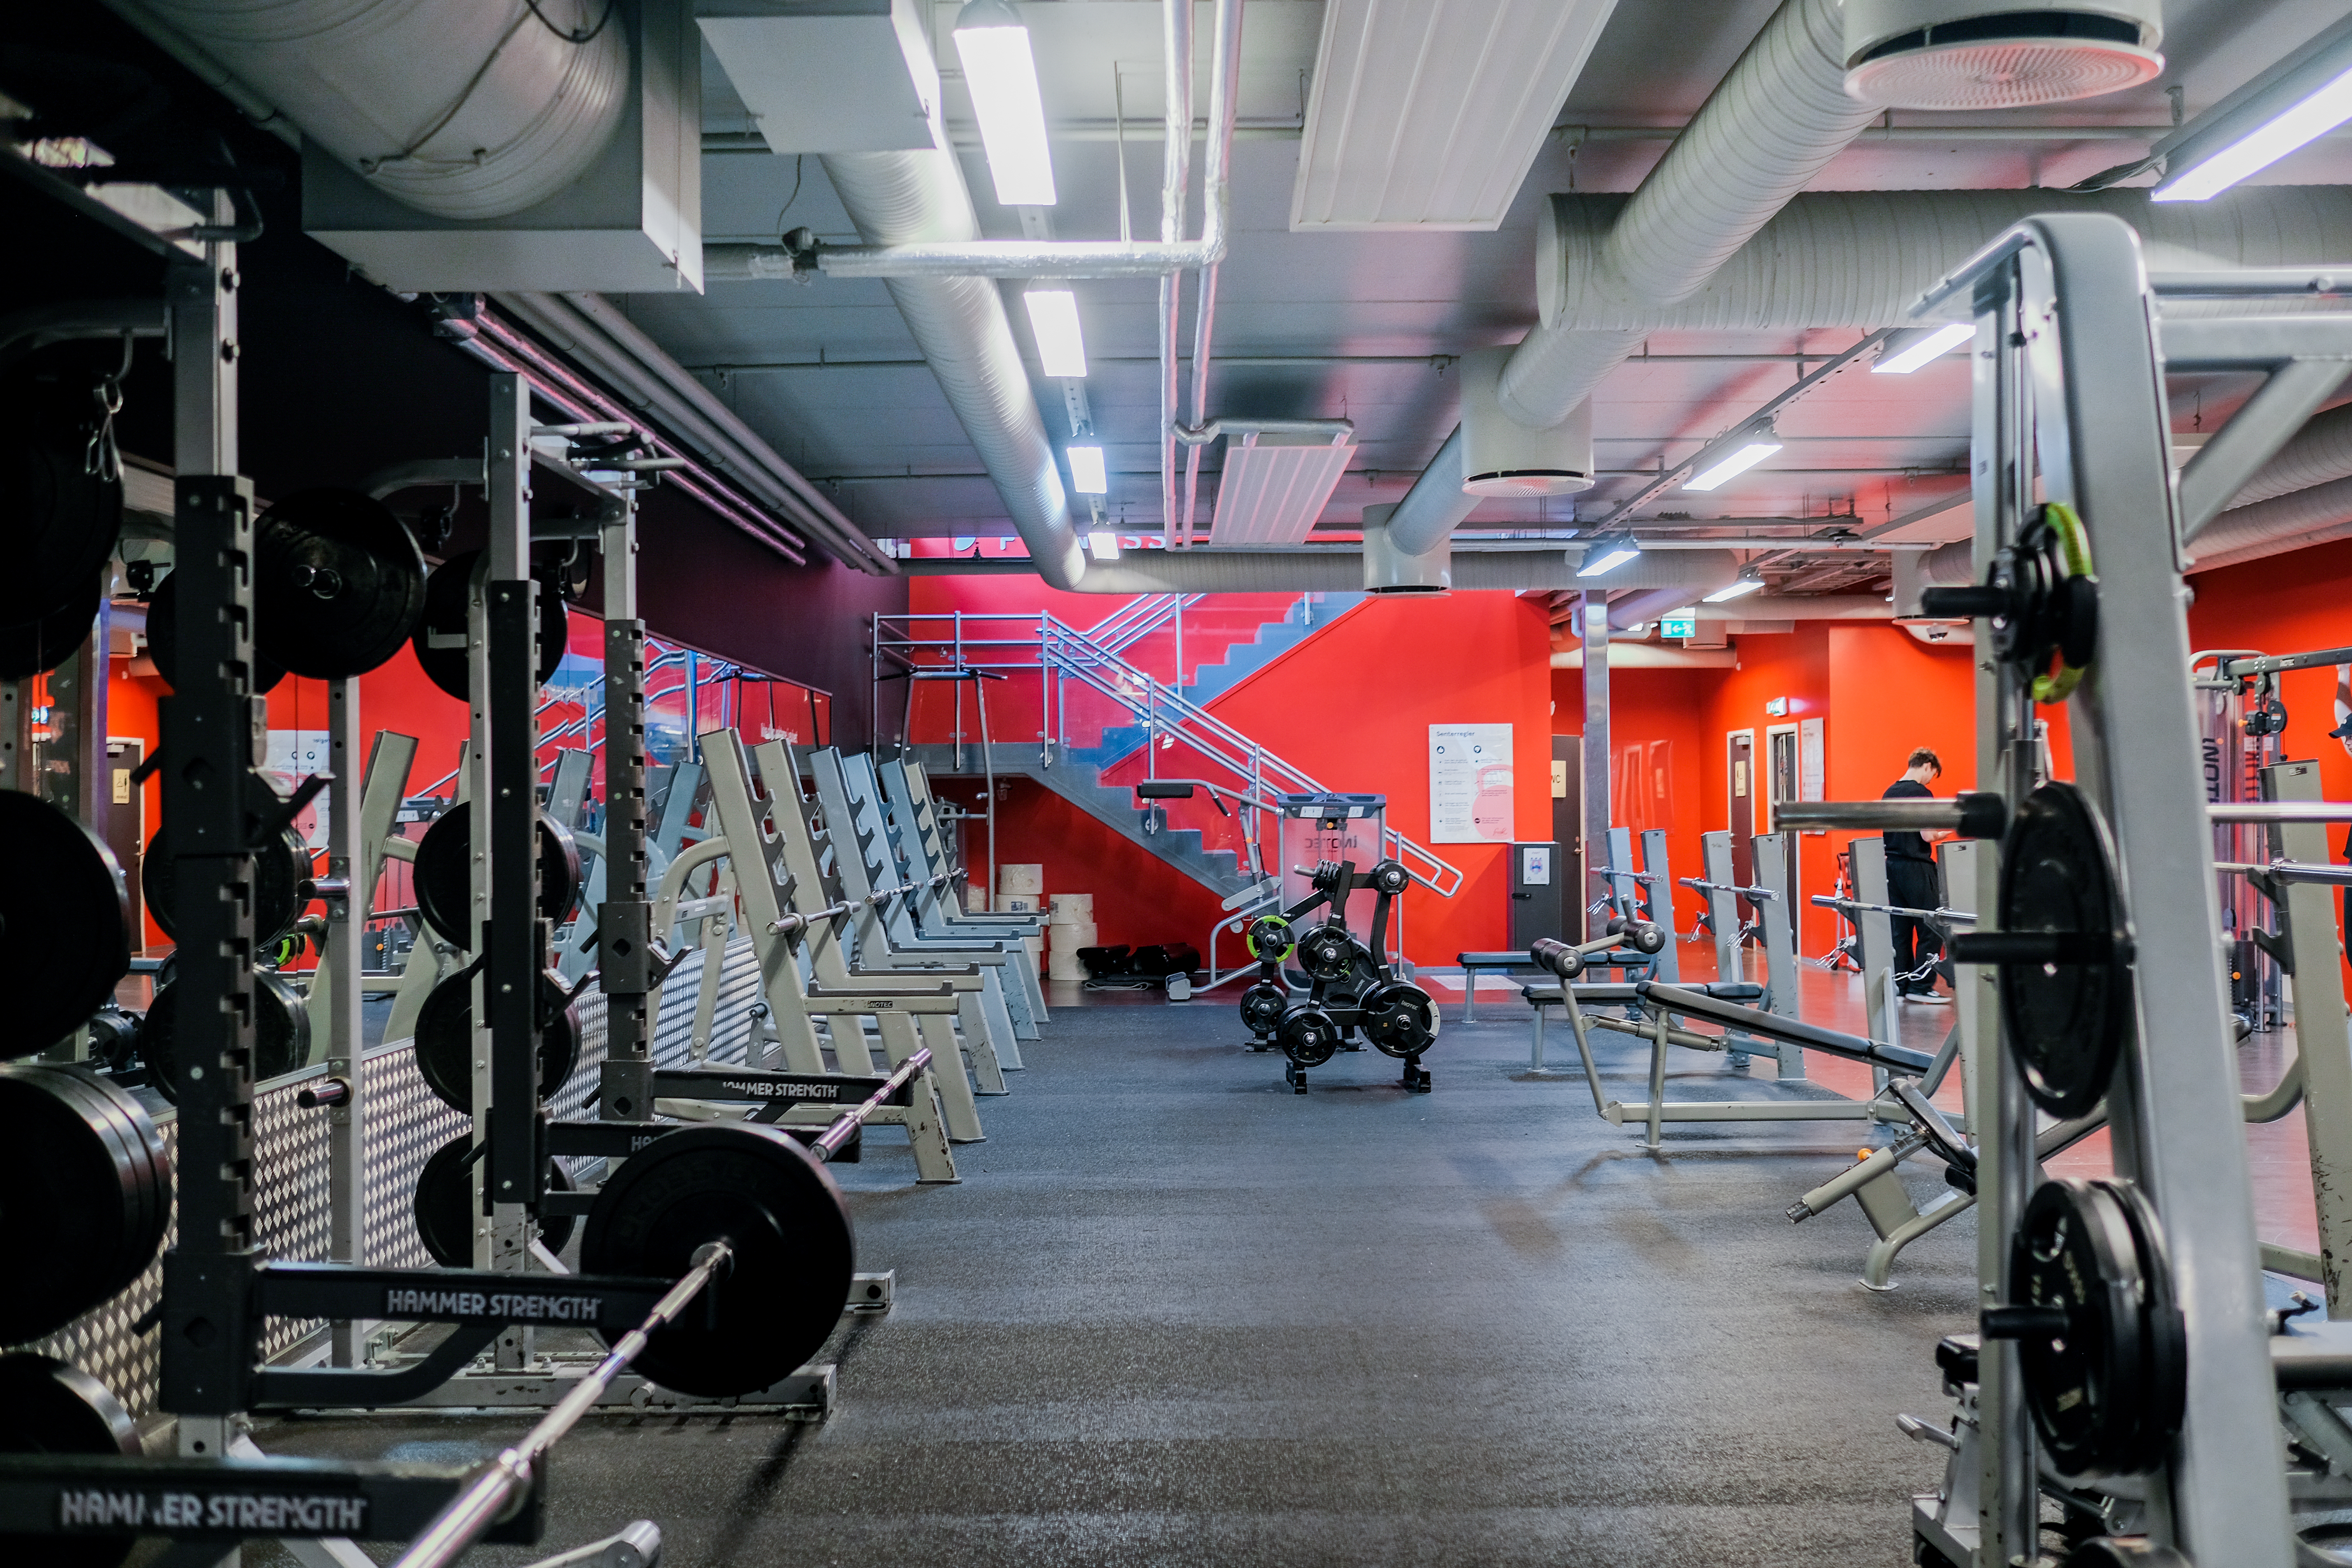 Våre frivektsområder for effektiv styrketrening på Fresh Fitness treningssenter i Kristiansand sentrum. Med et bredt utvalg av vekter og utstyr kan du skape en skreddersydd treningsopplevelse som passer dine behov og mål.